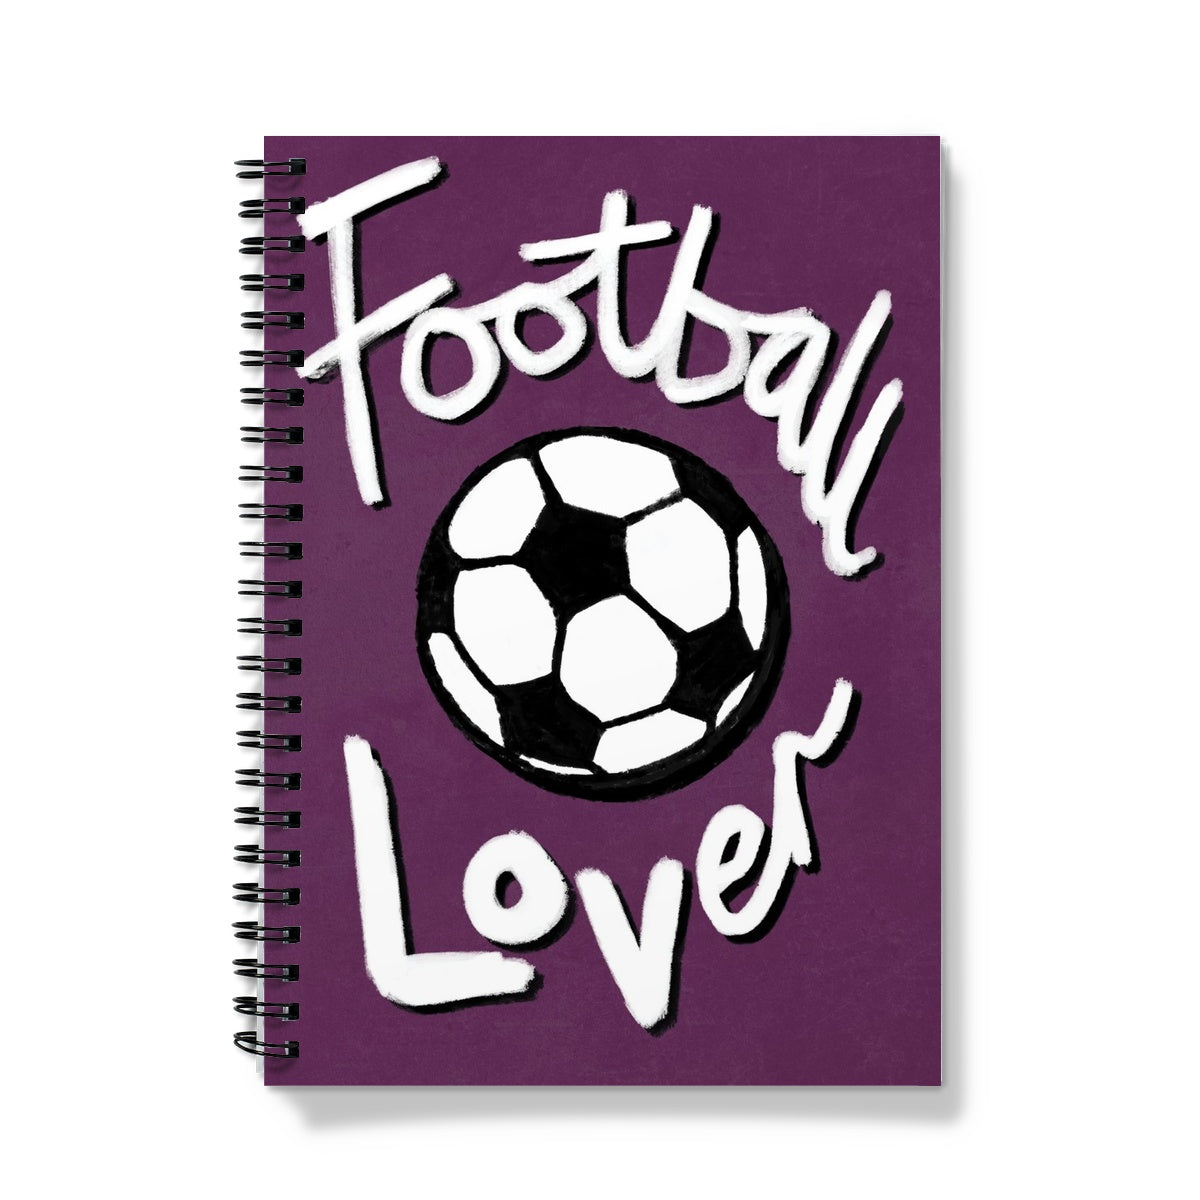 Football Lover Print - Plum, Black, White Notebook